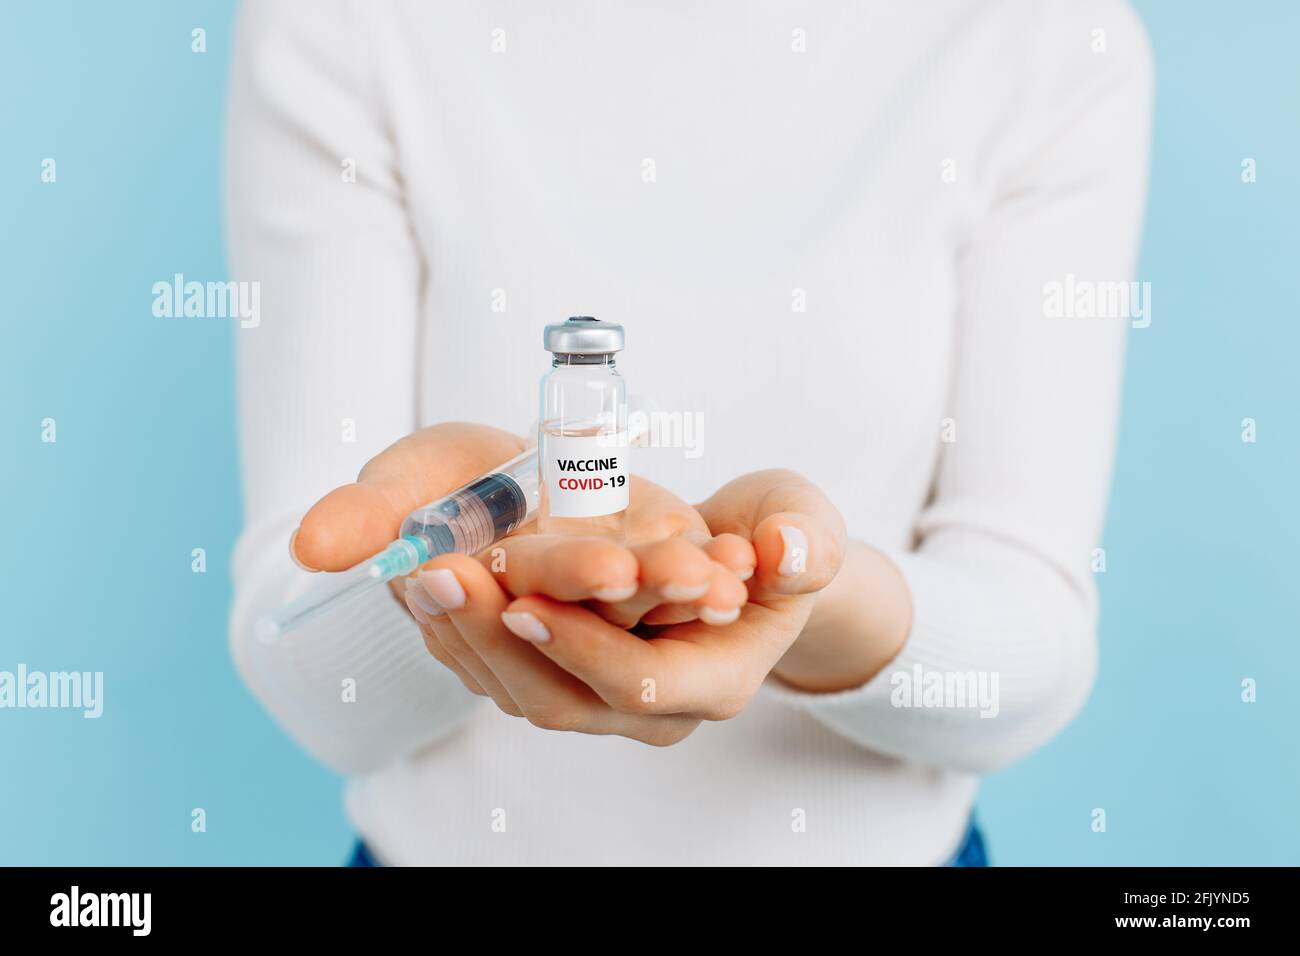 Mujer joven con un frasco de vacuna contra el coronavirus covid-19, médico en un laboratorio con un tubo de ensayo biológico para análisis y muestreo para el i Foto de stock